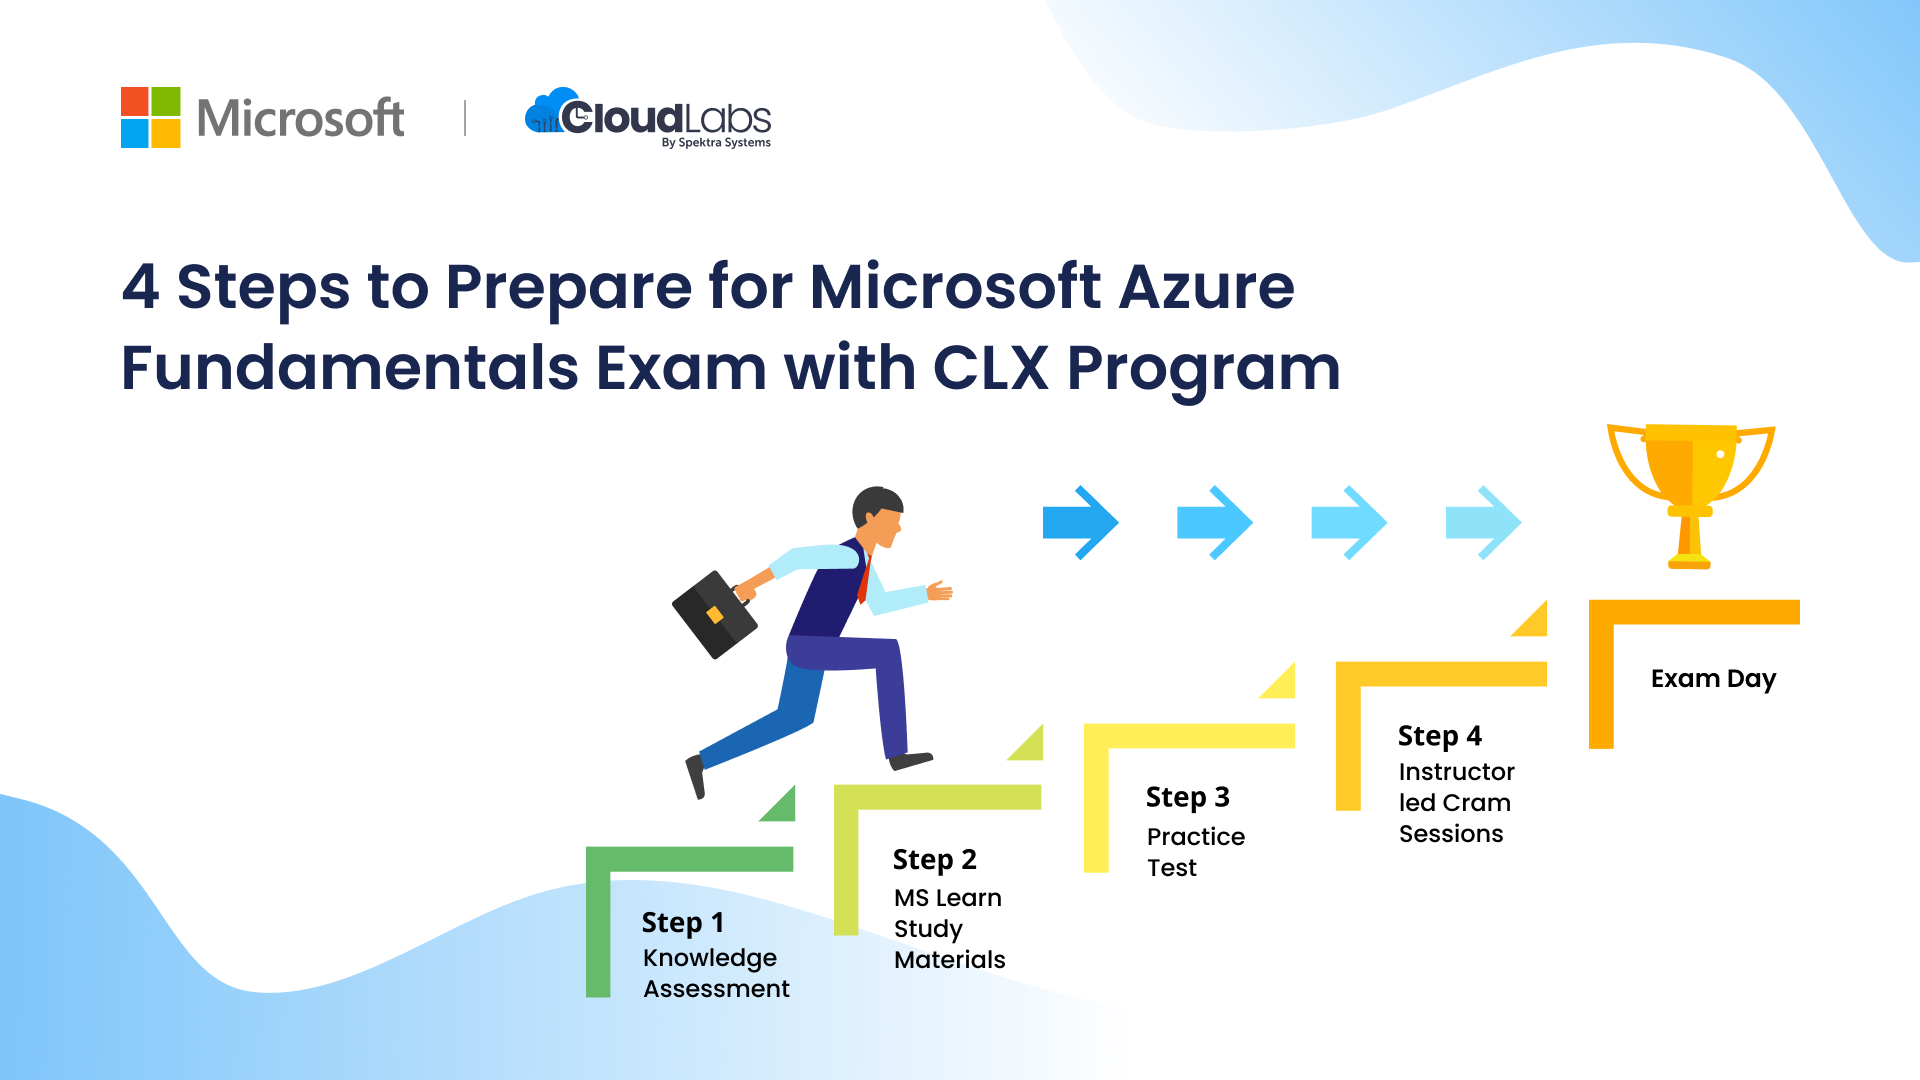 4 Steps to Prepare for Microsoft Azure Fundamentals Exam with CLX Program